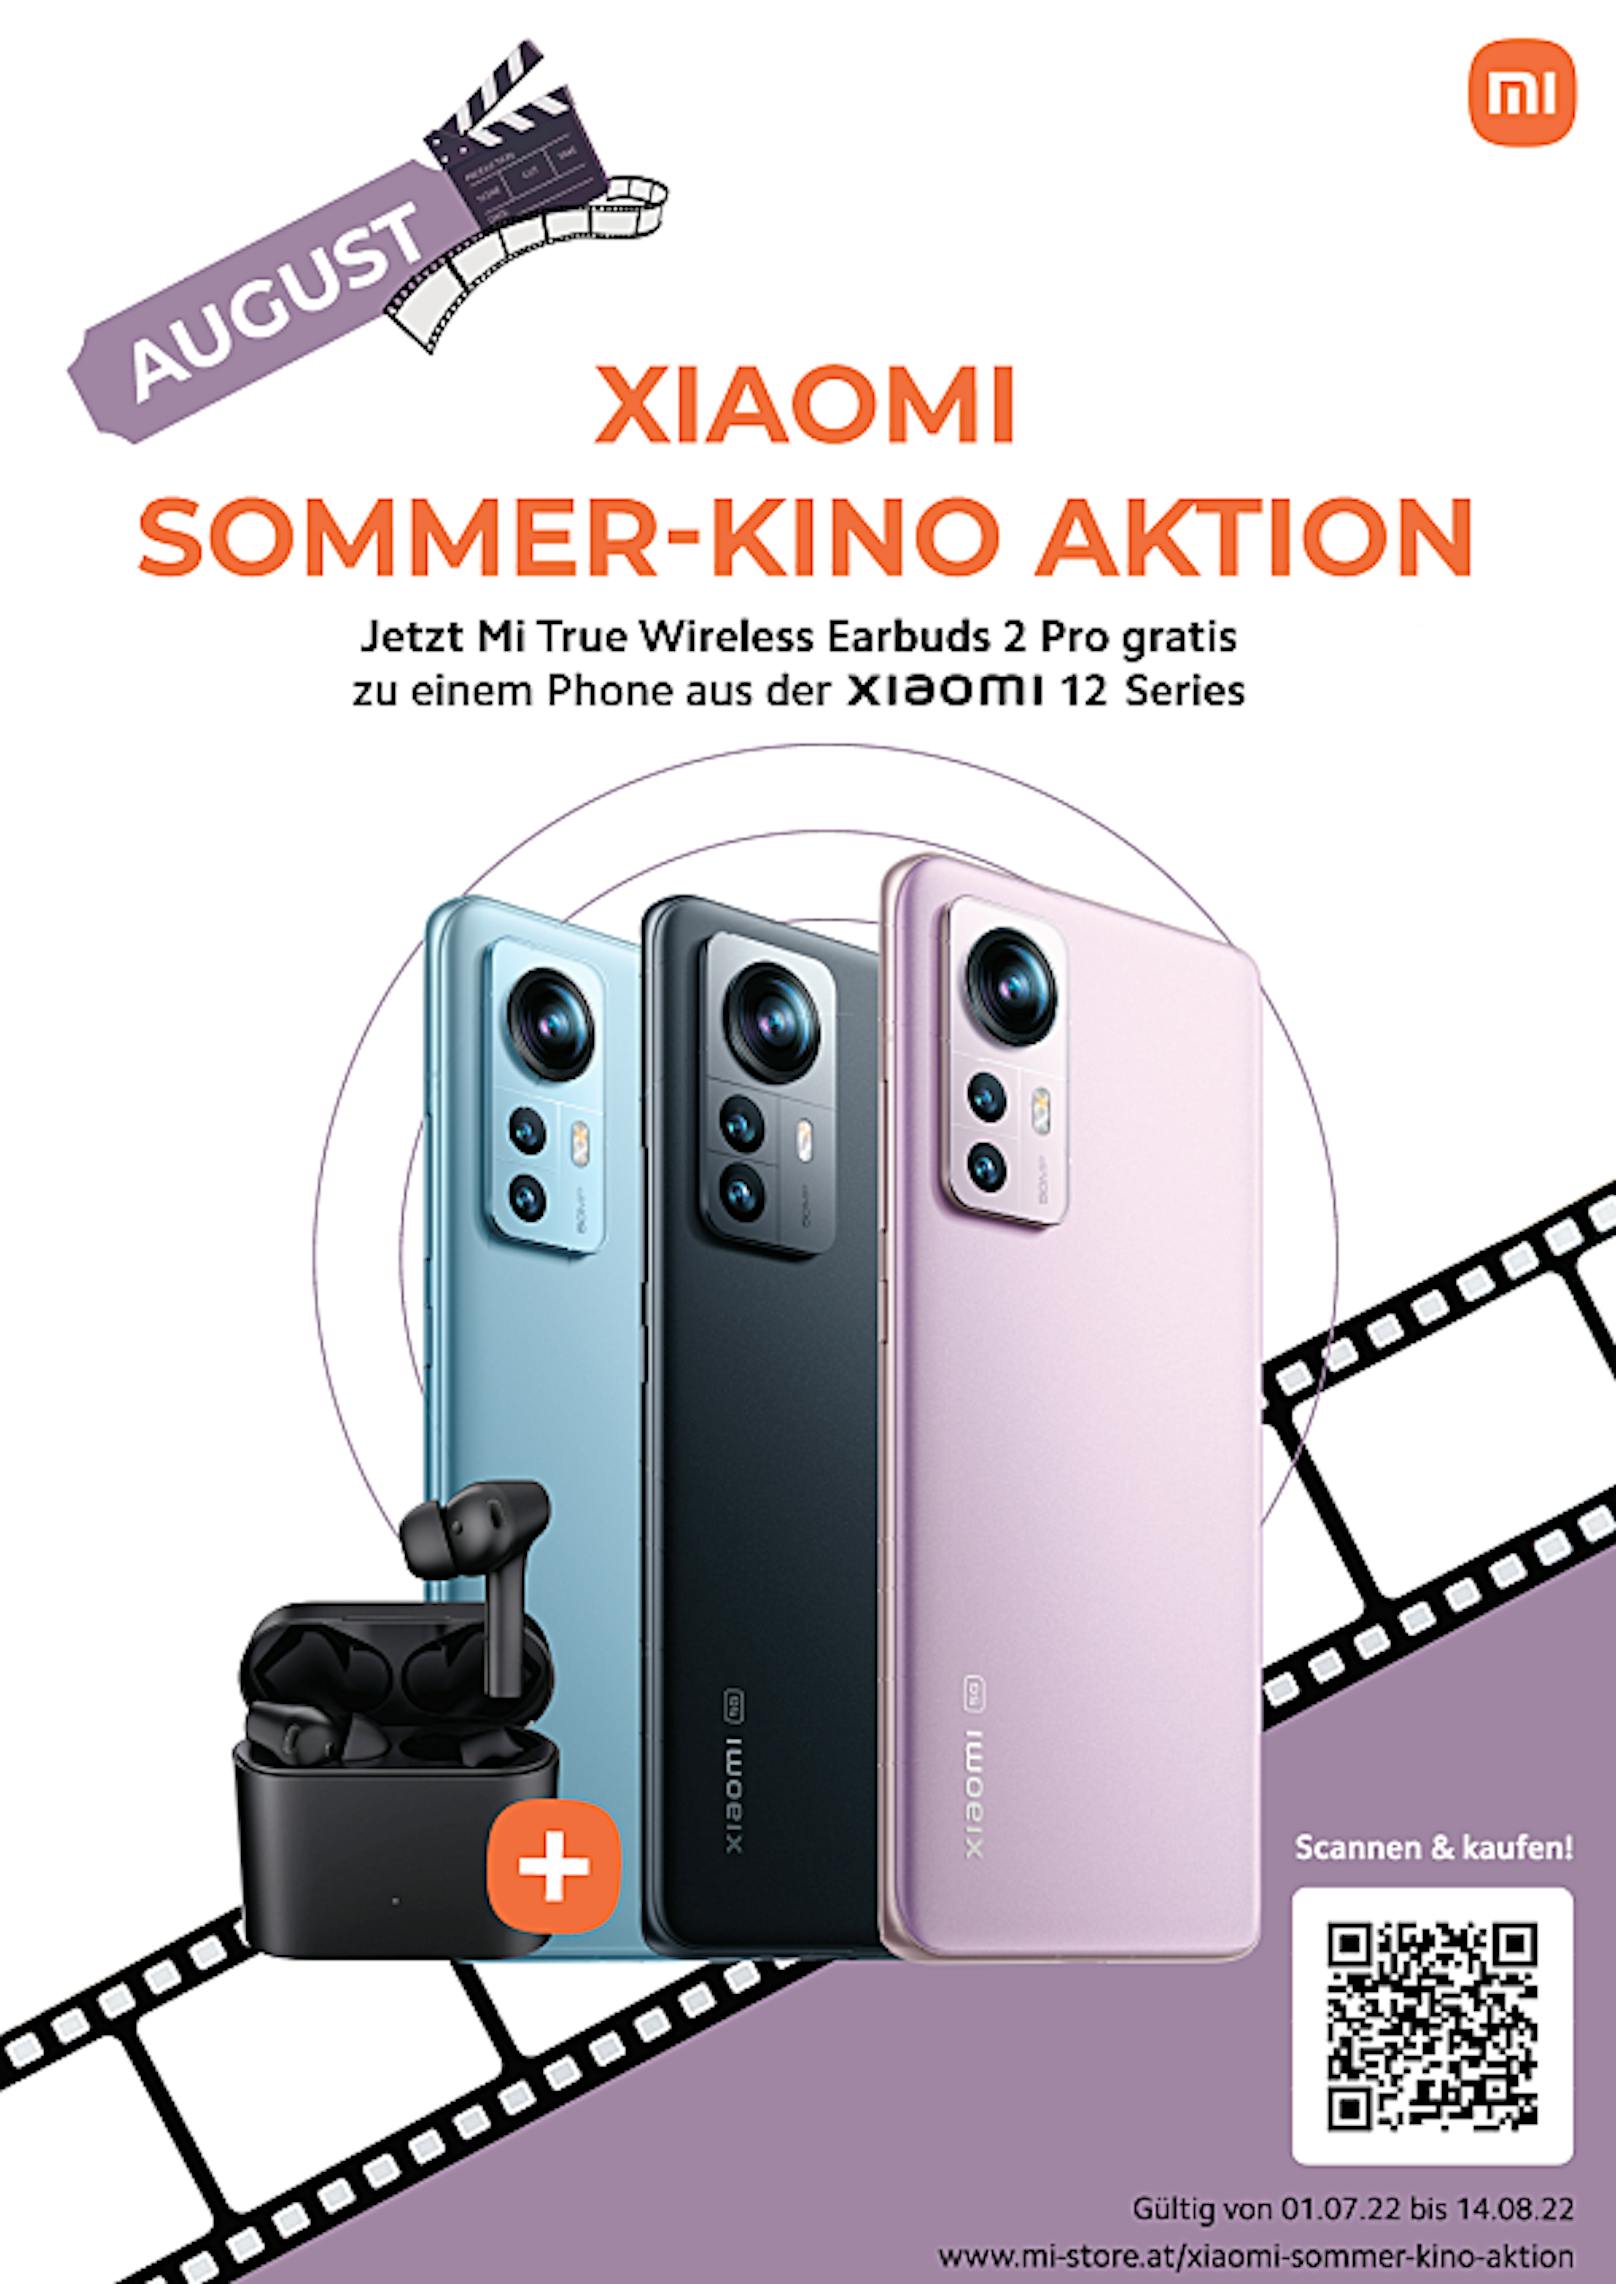 Xiaomi startet große Sommerpromotion im Rahmen der Silent Cinema Tour